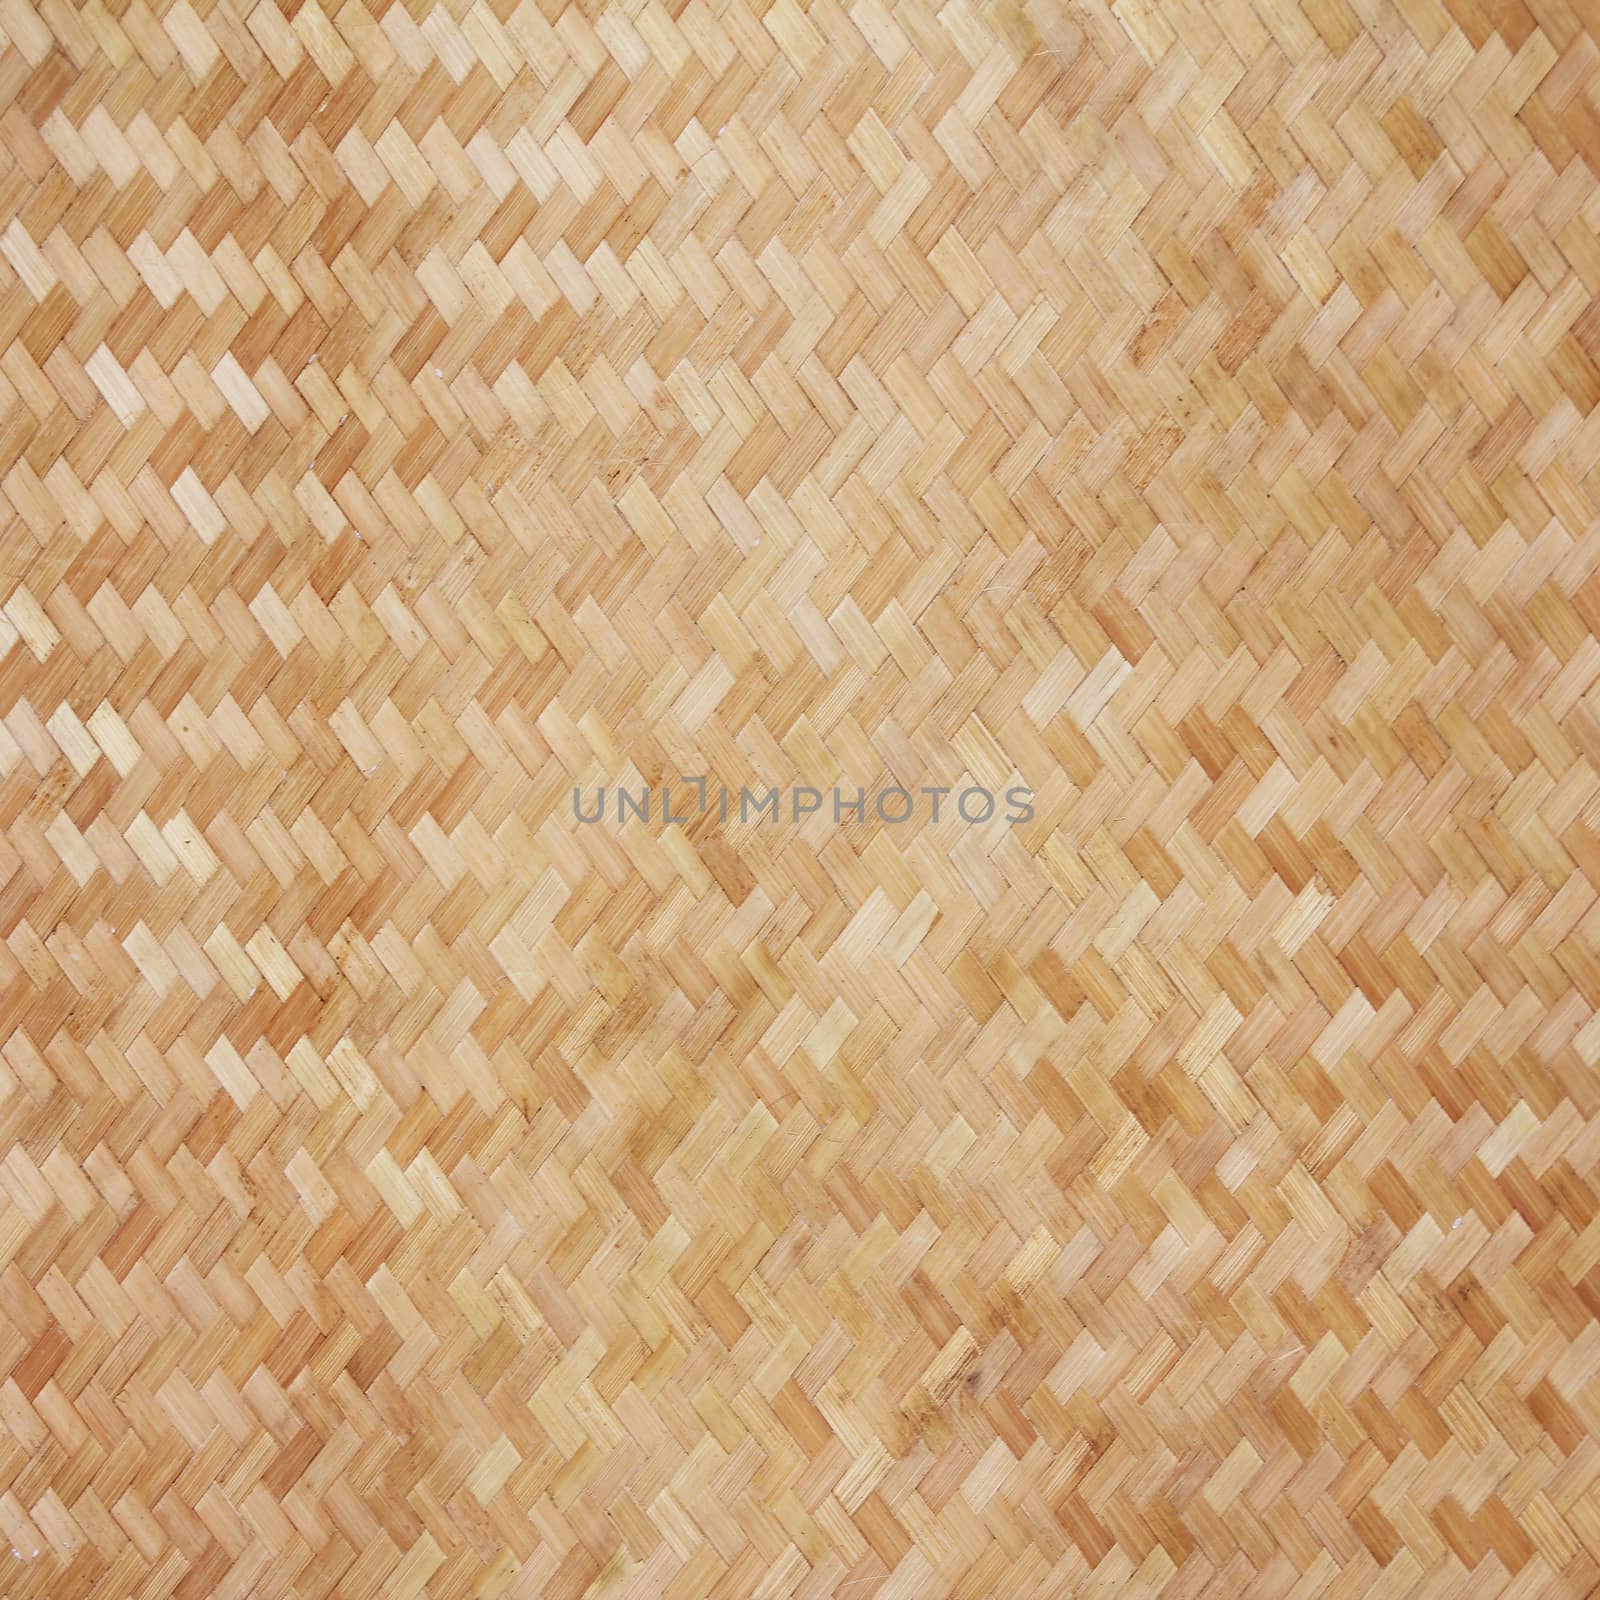 Bamboo texture by wyoosumran